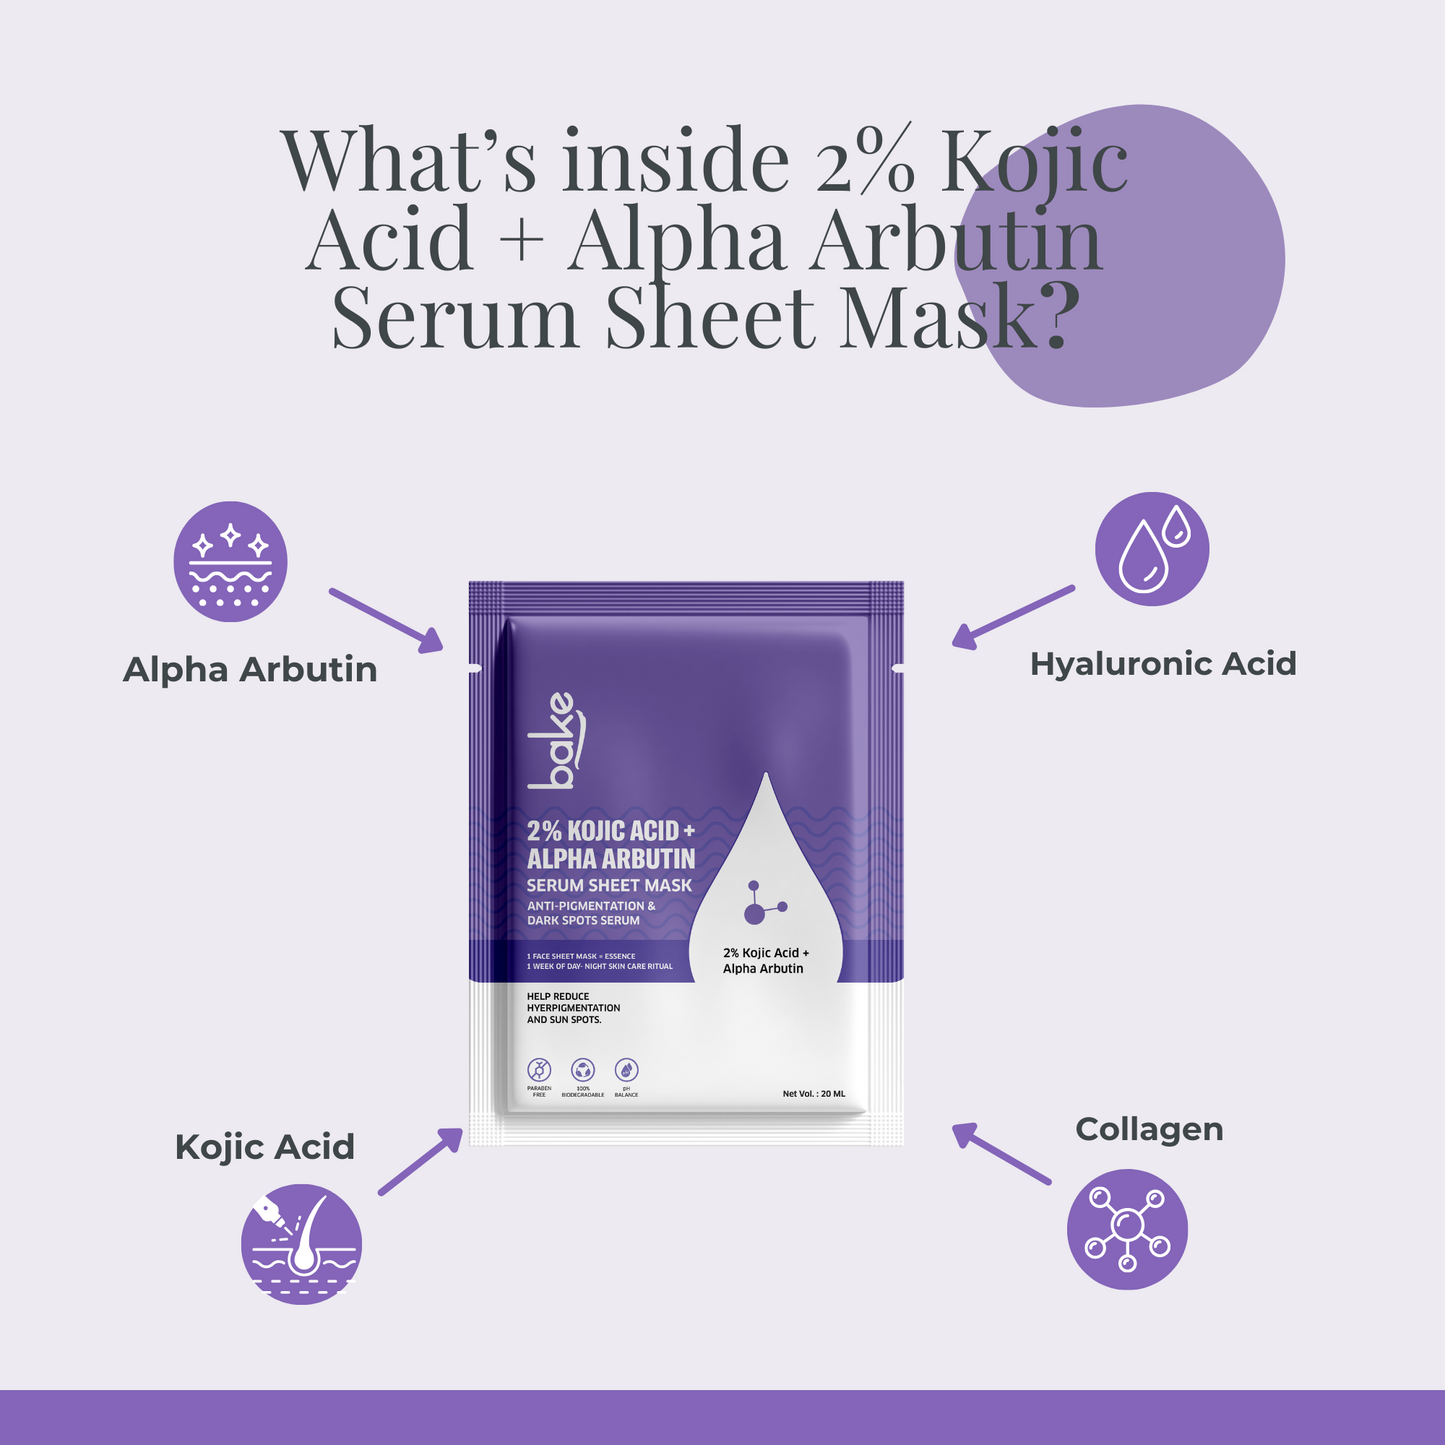 2% Kojic Acid + Alpha Arbutin Serum Sheet Mask